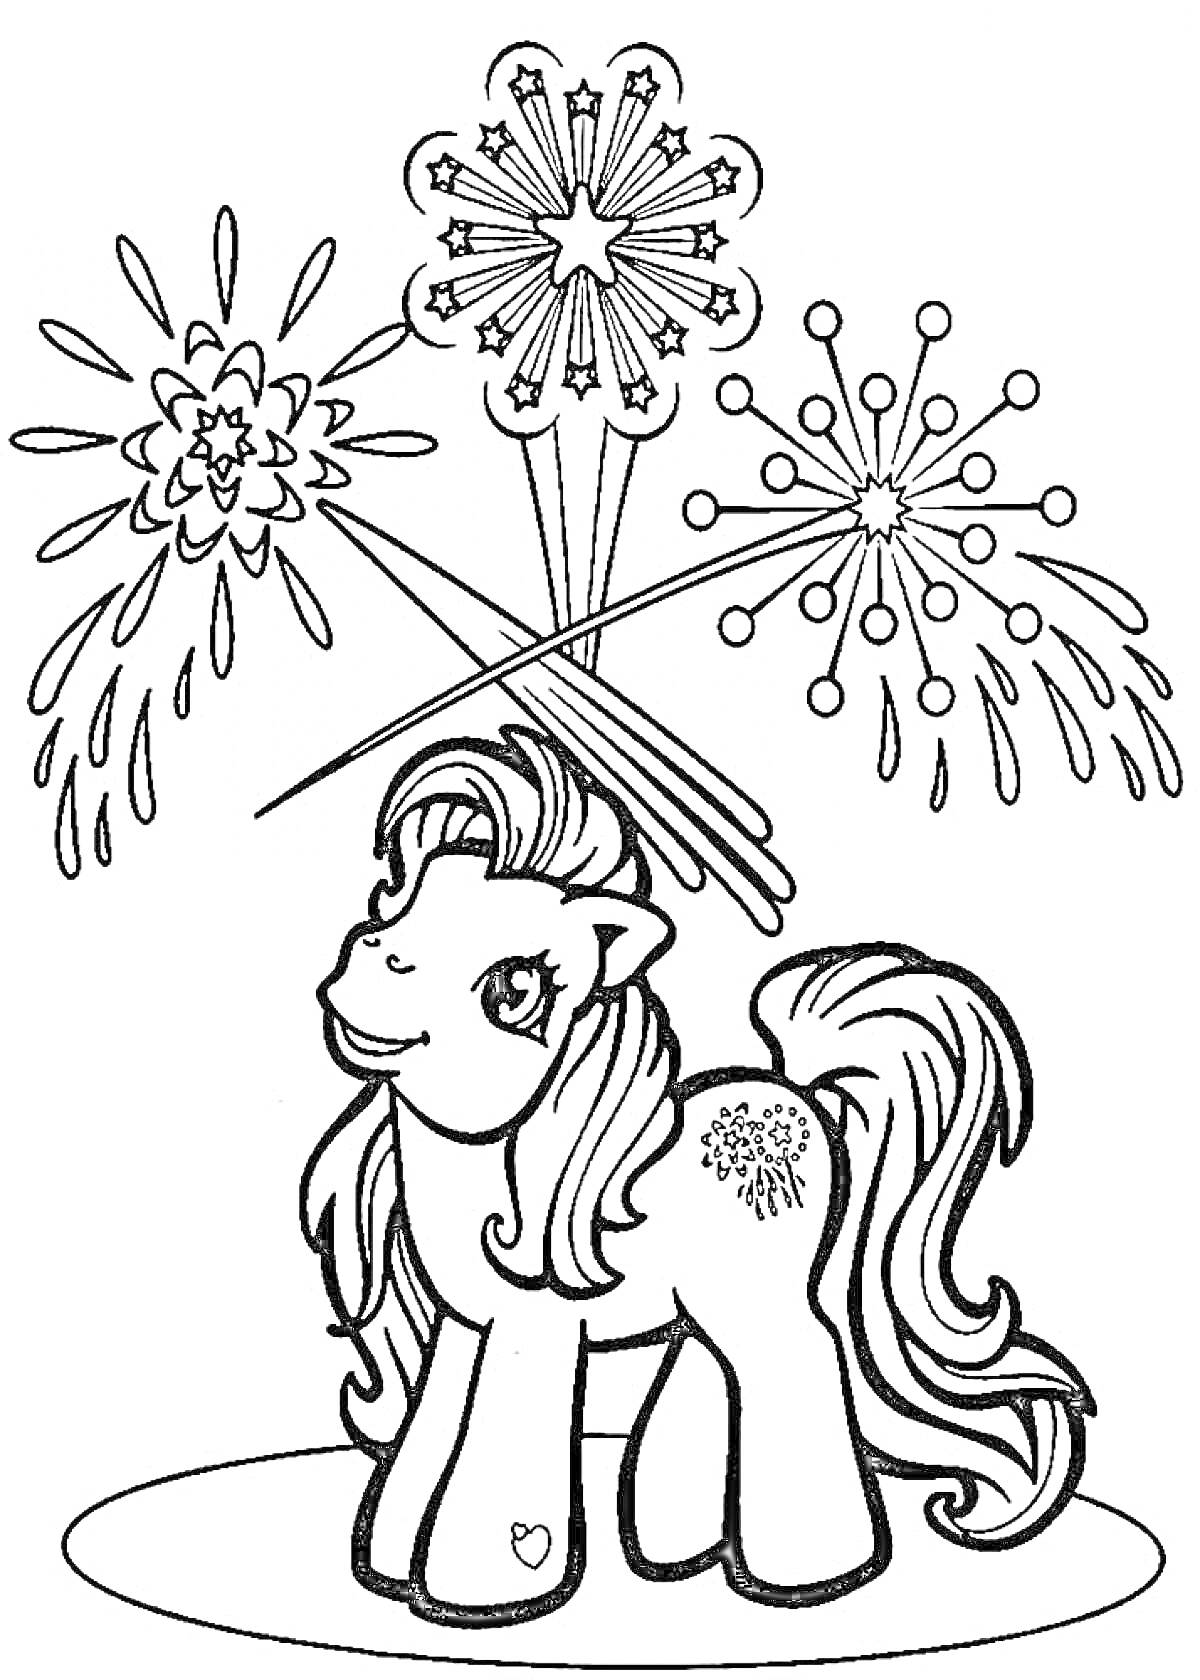 Раскраска Пони с длинной гривой и фейерверками